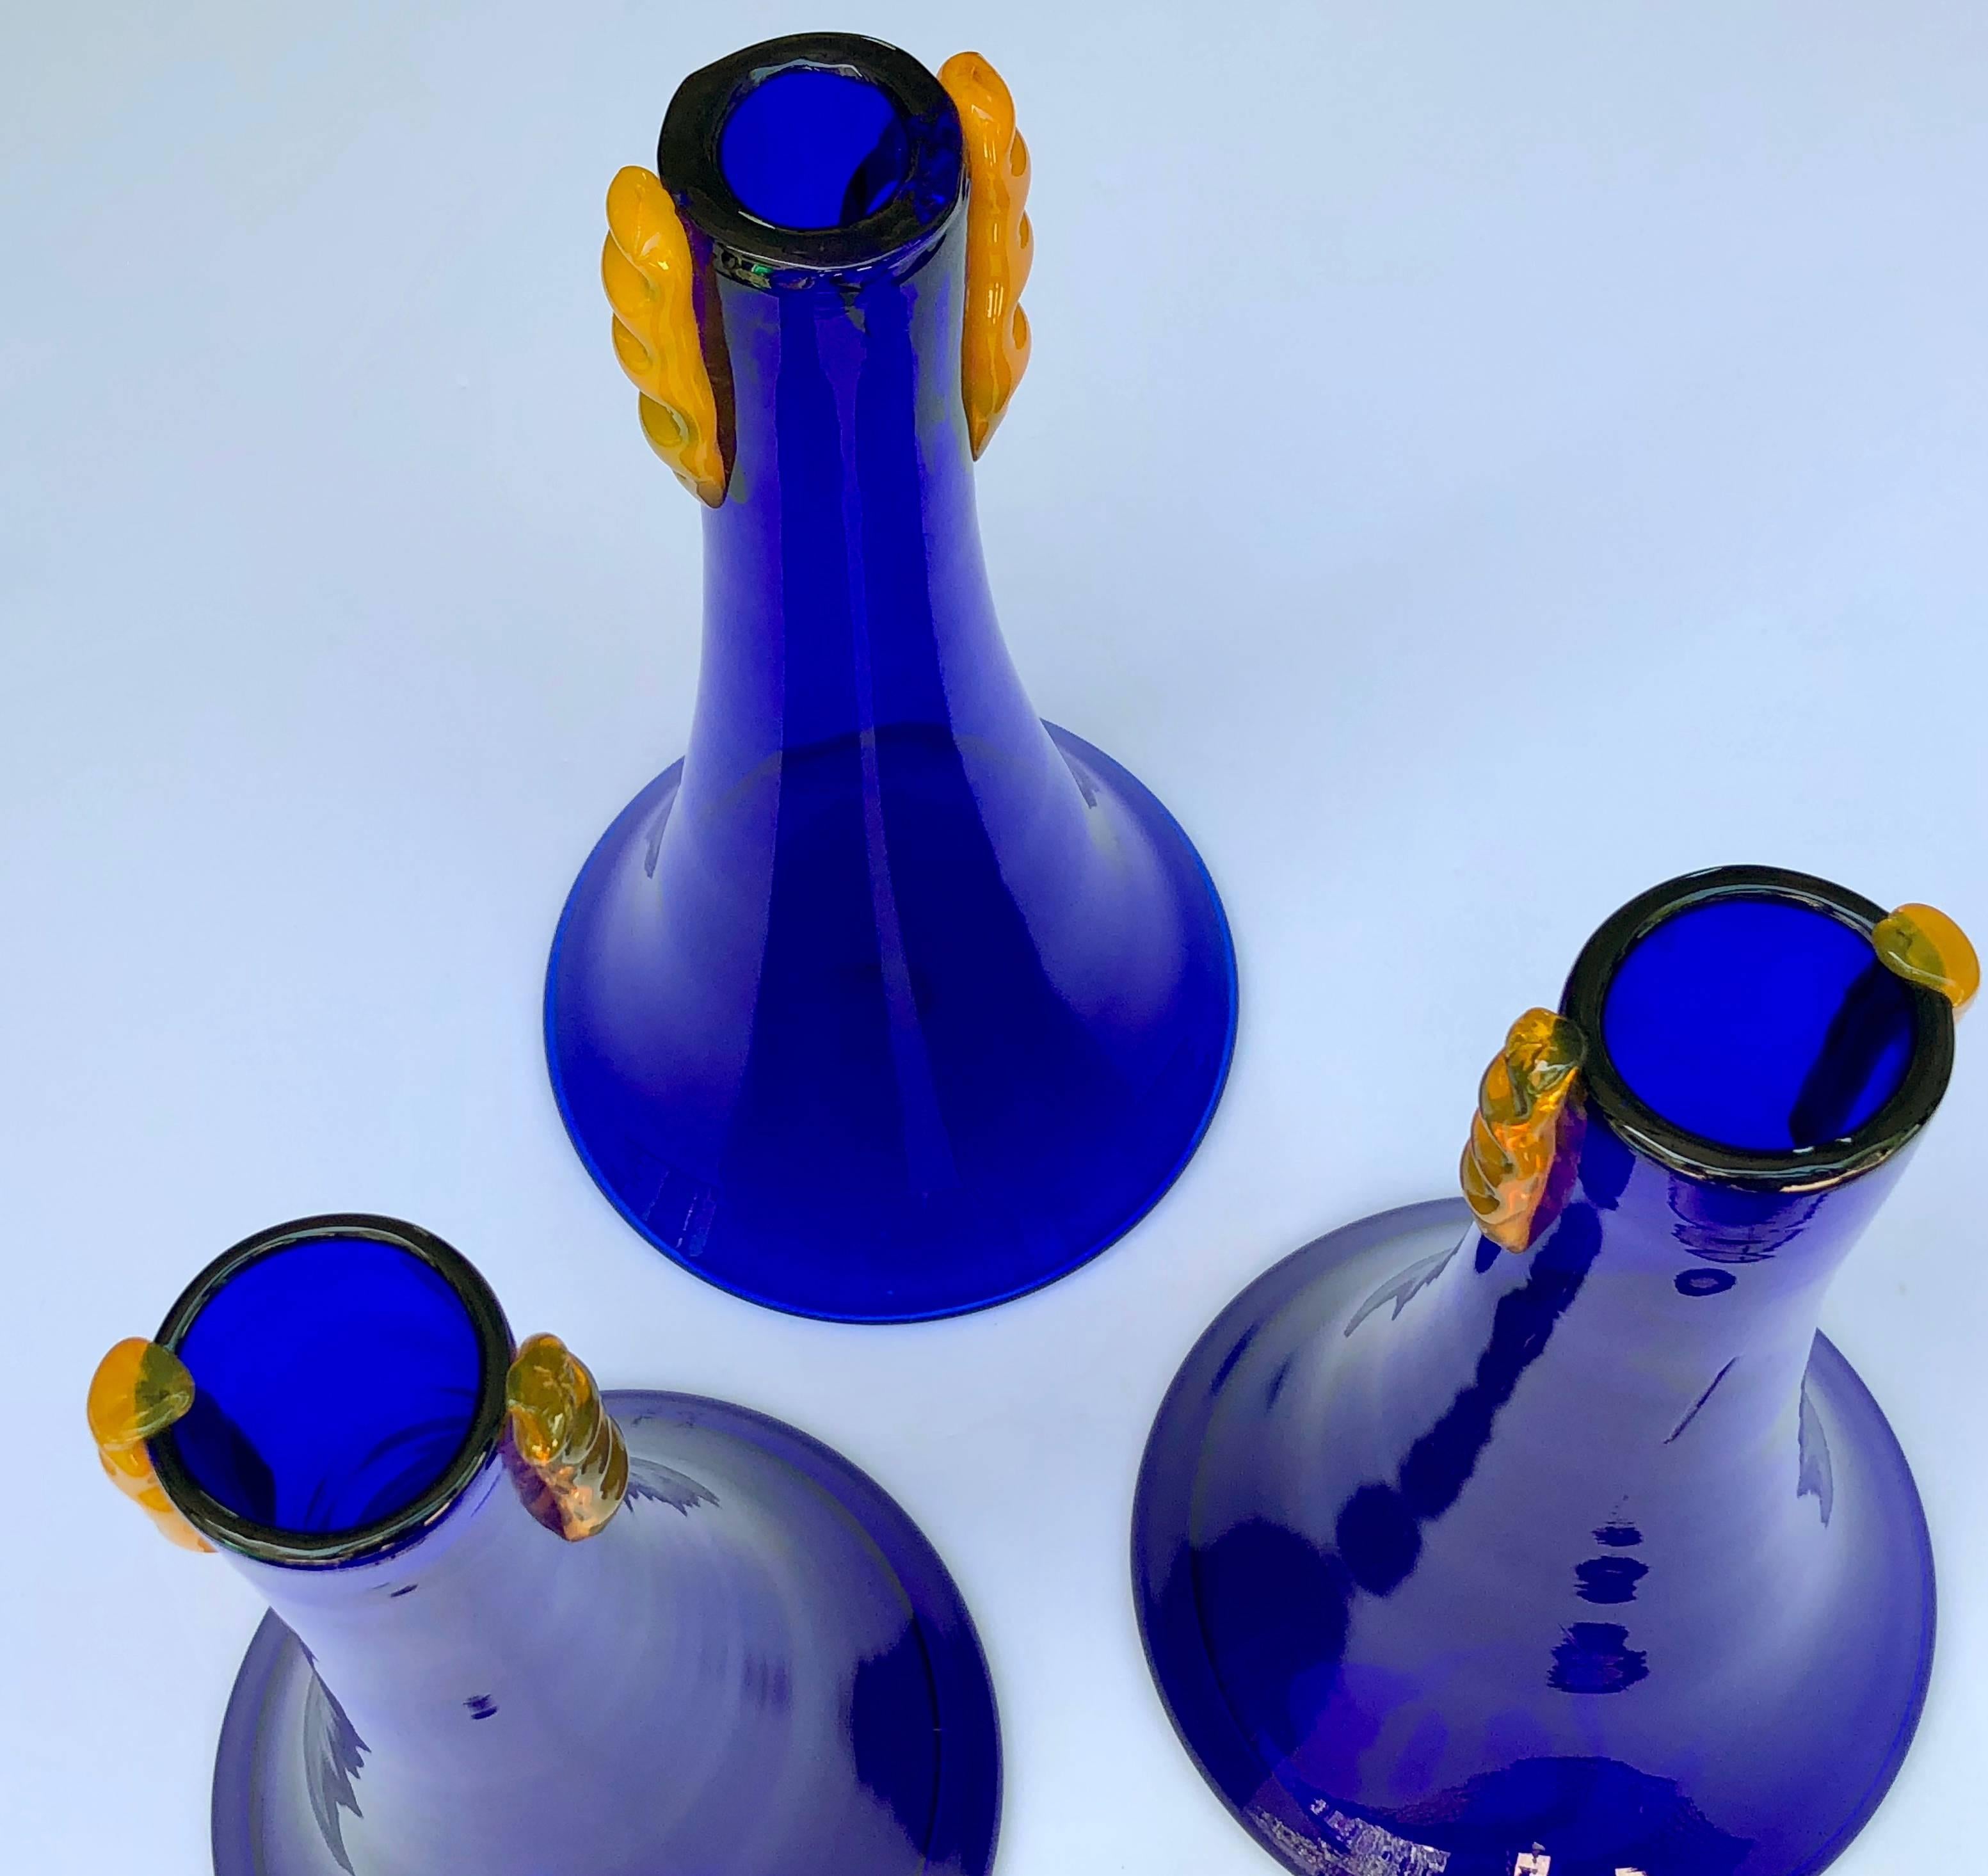 Un ensemble rare de trois vases évasés en verre cobalt Blenko des années 1980 avec une décoration orange appliquée ; ces vases élégants ont été fabriqués par Blenko Glassworks comme pièces expérimentales et n'ont jamais été mis en production ; de